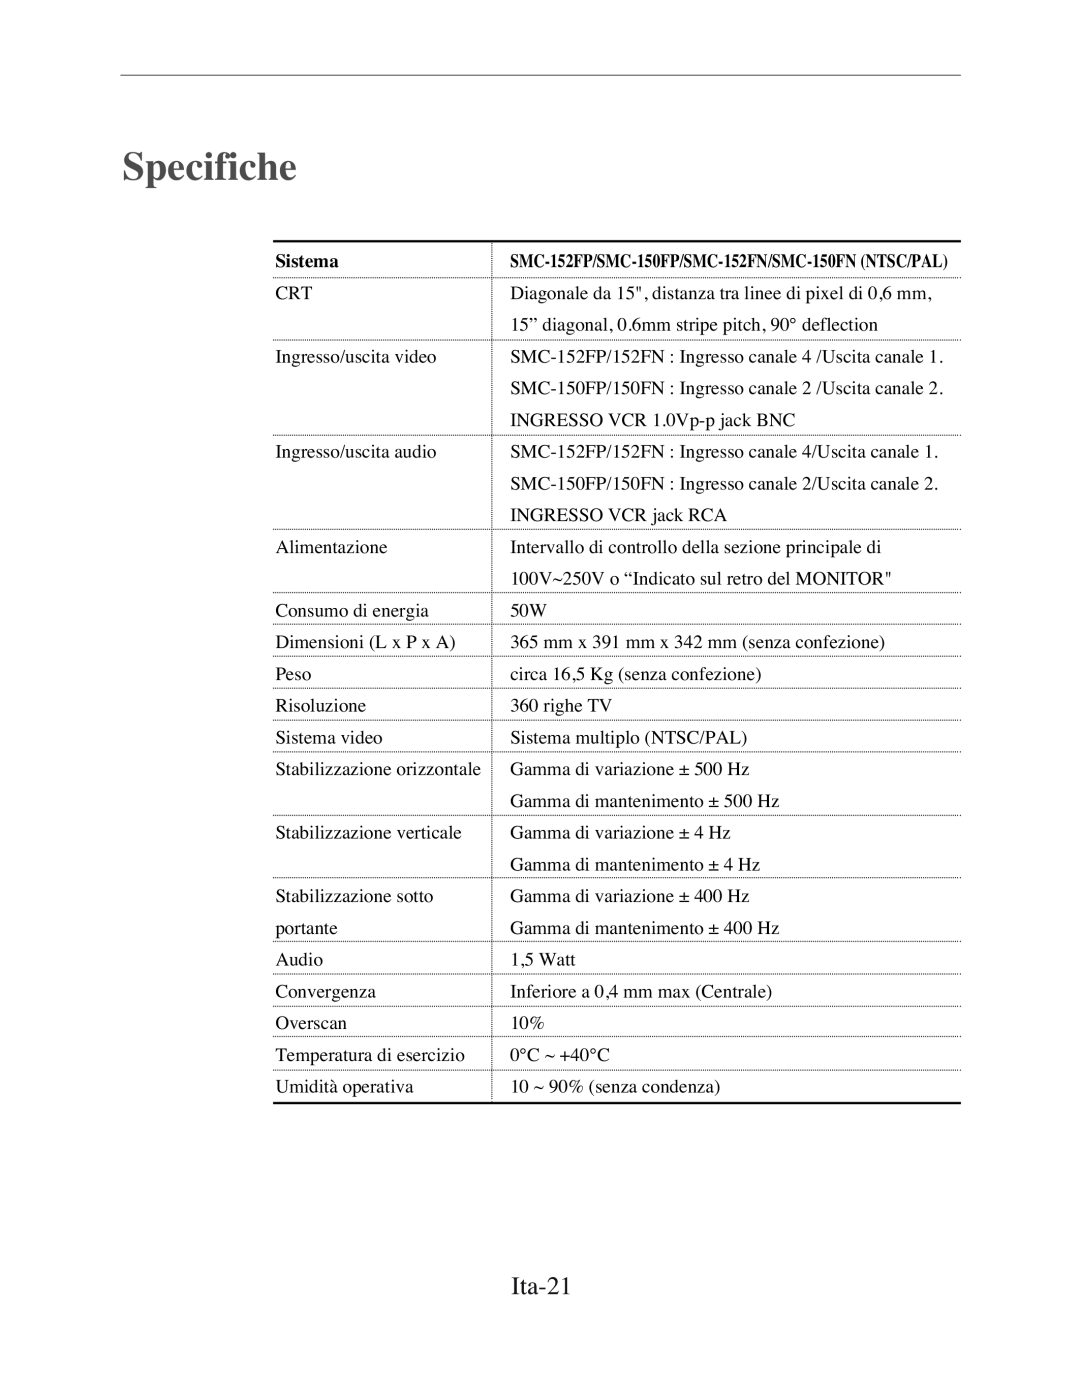 Samsung SMC-152FP manual Specifiche, Ita-21, Sistema 